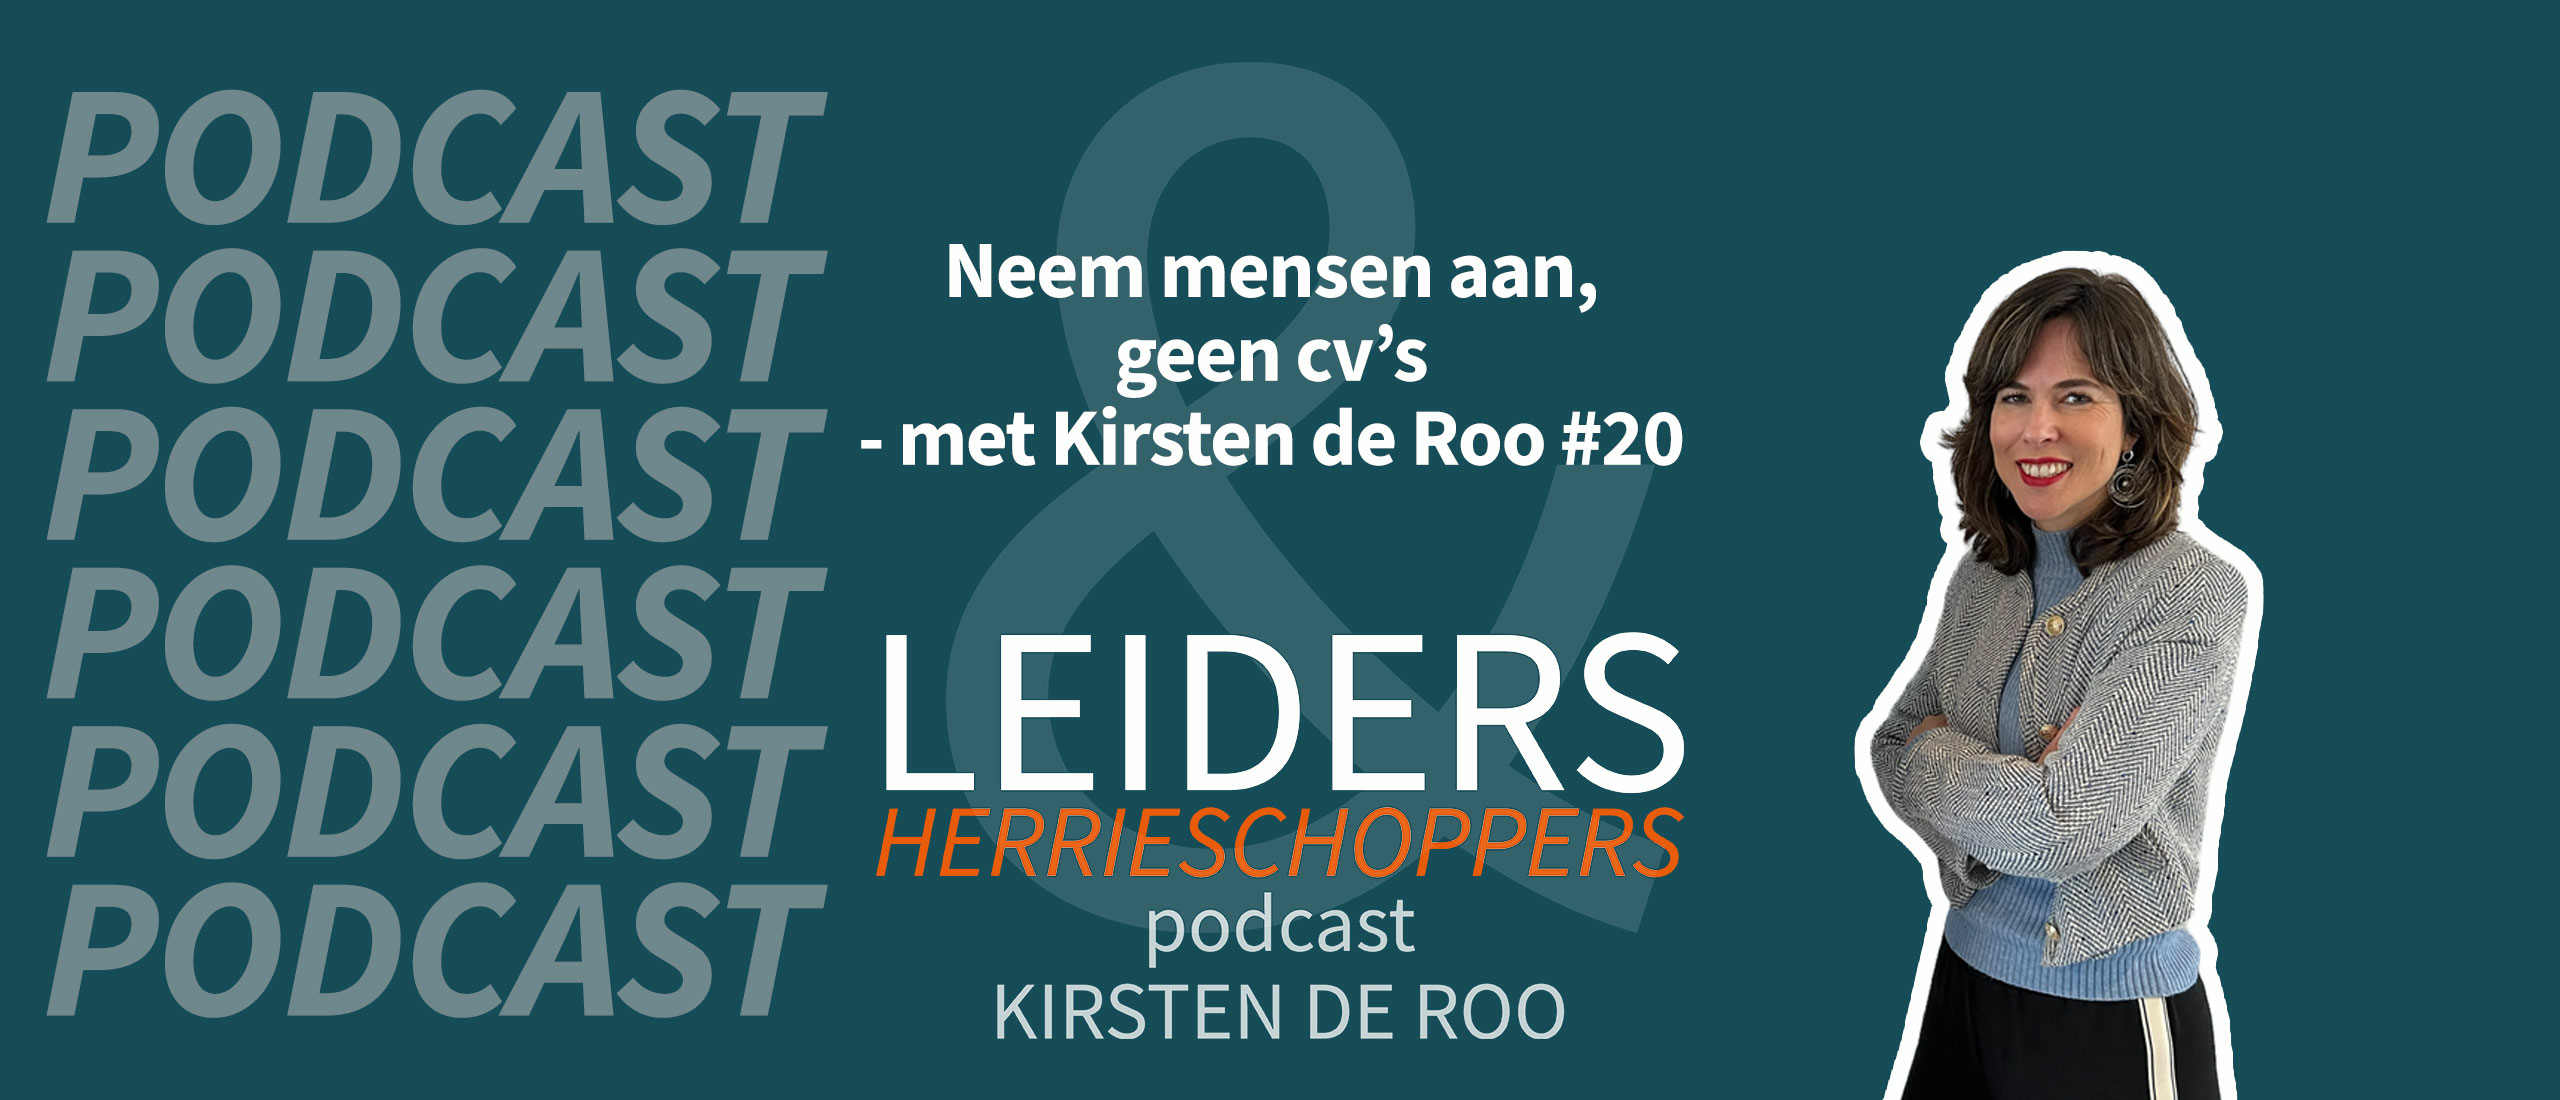 Neem mensen aan, geen cv's - met Kirsten de Roo #20